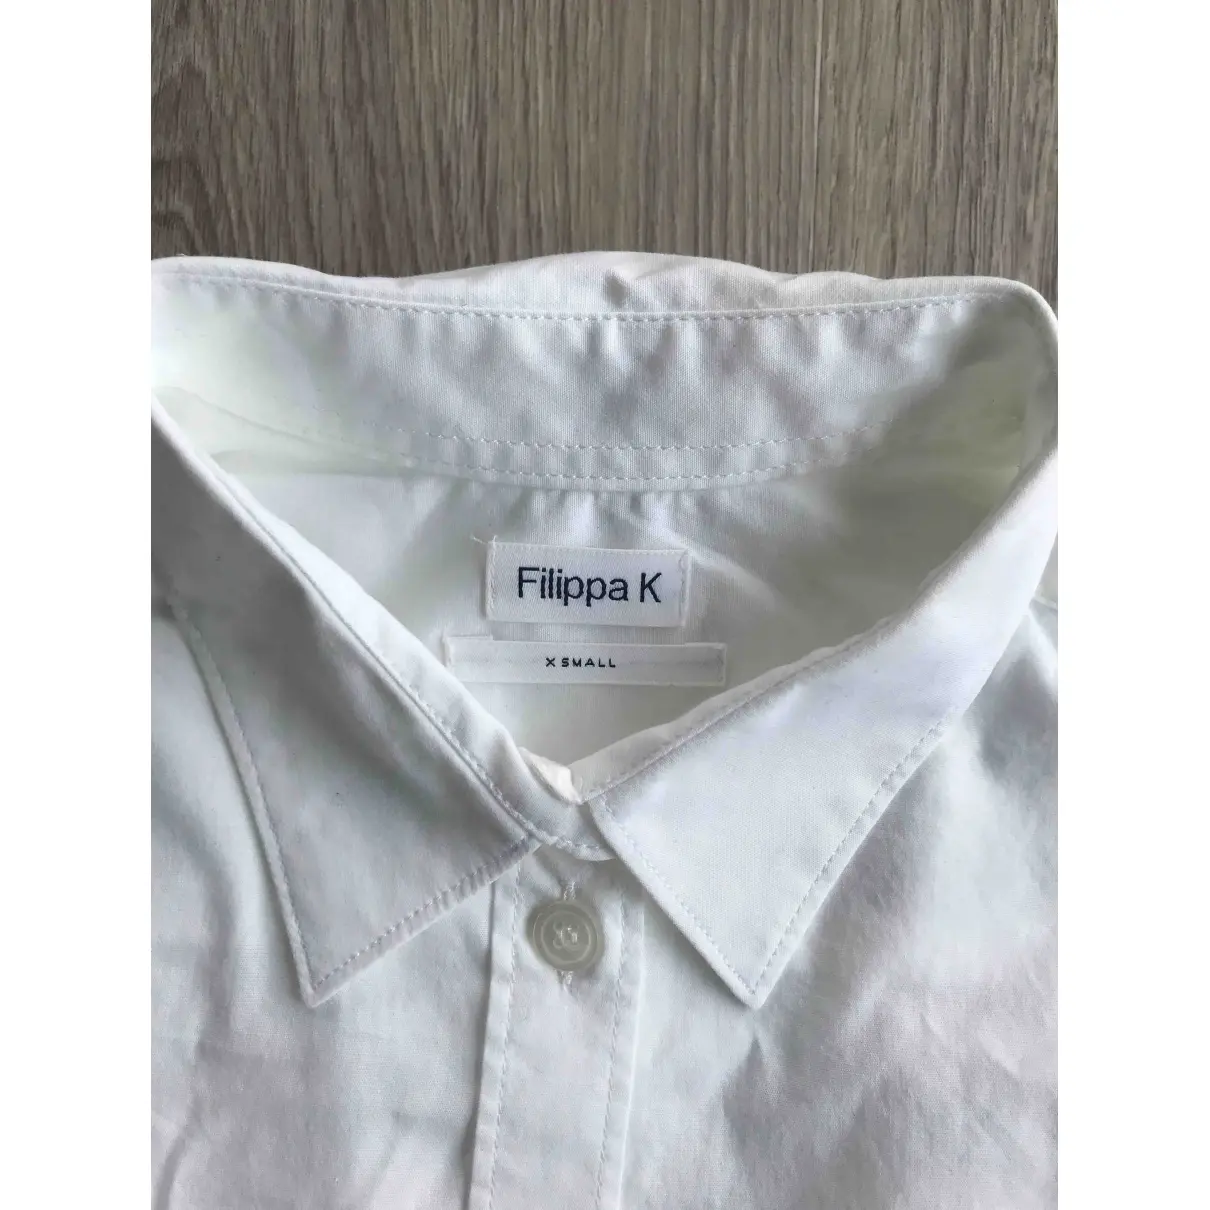 Buy Filippa K Shirt online